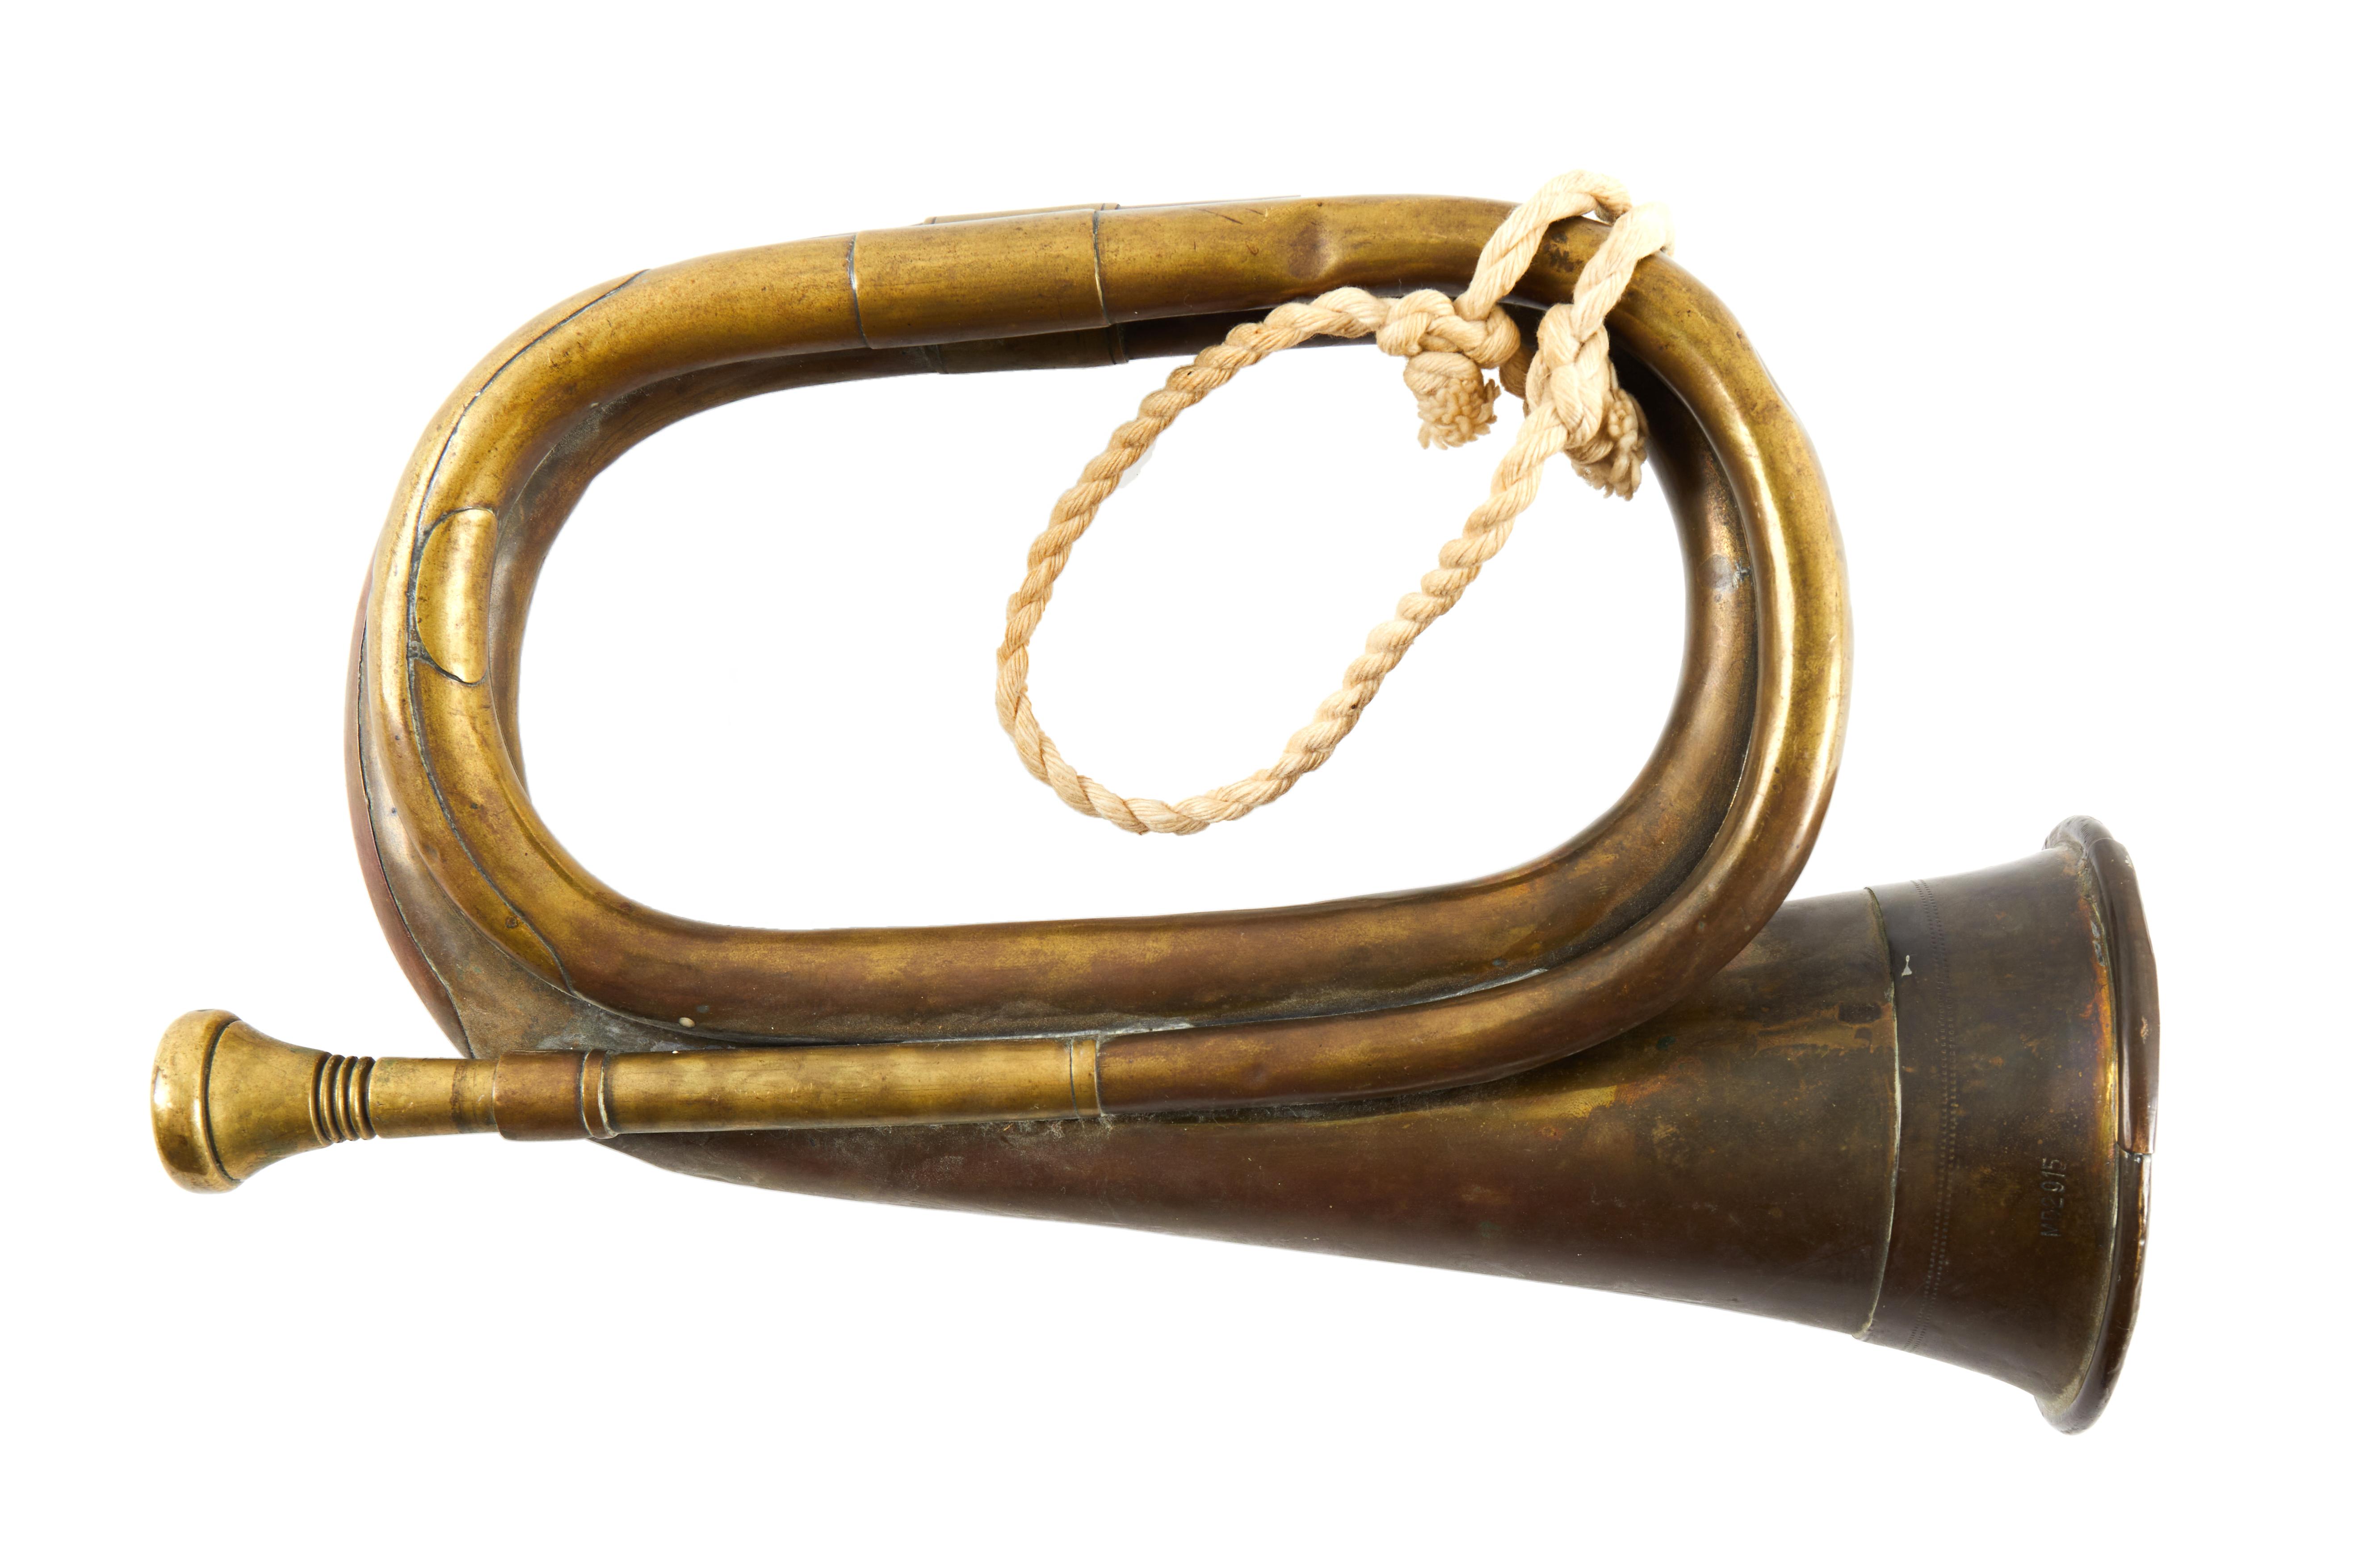 Signalhorn in F für Kompanie-Hornisten d. k. u. k. Fußtruppen, -  Historische Waffen, Uniformen und Militaria 2023/09/26 - Realized price:  EUR 624 - Dorotheum